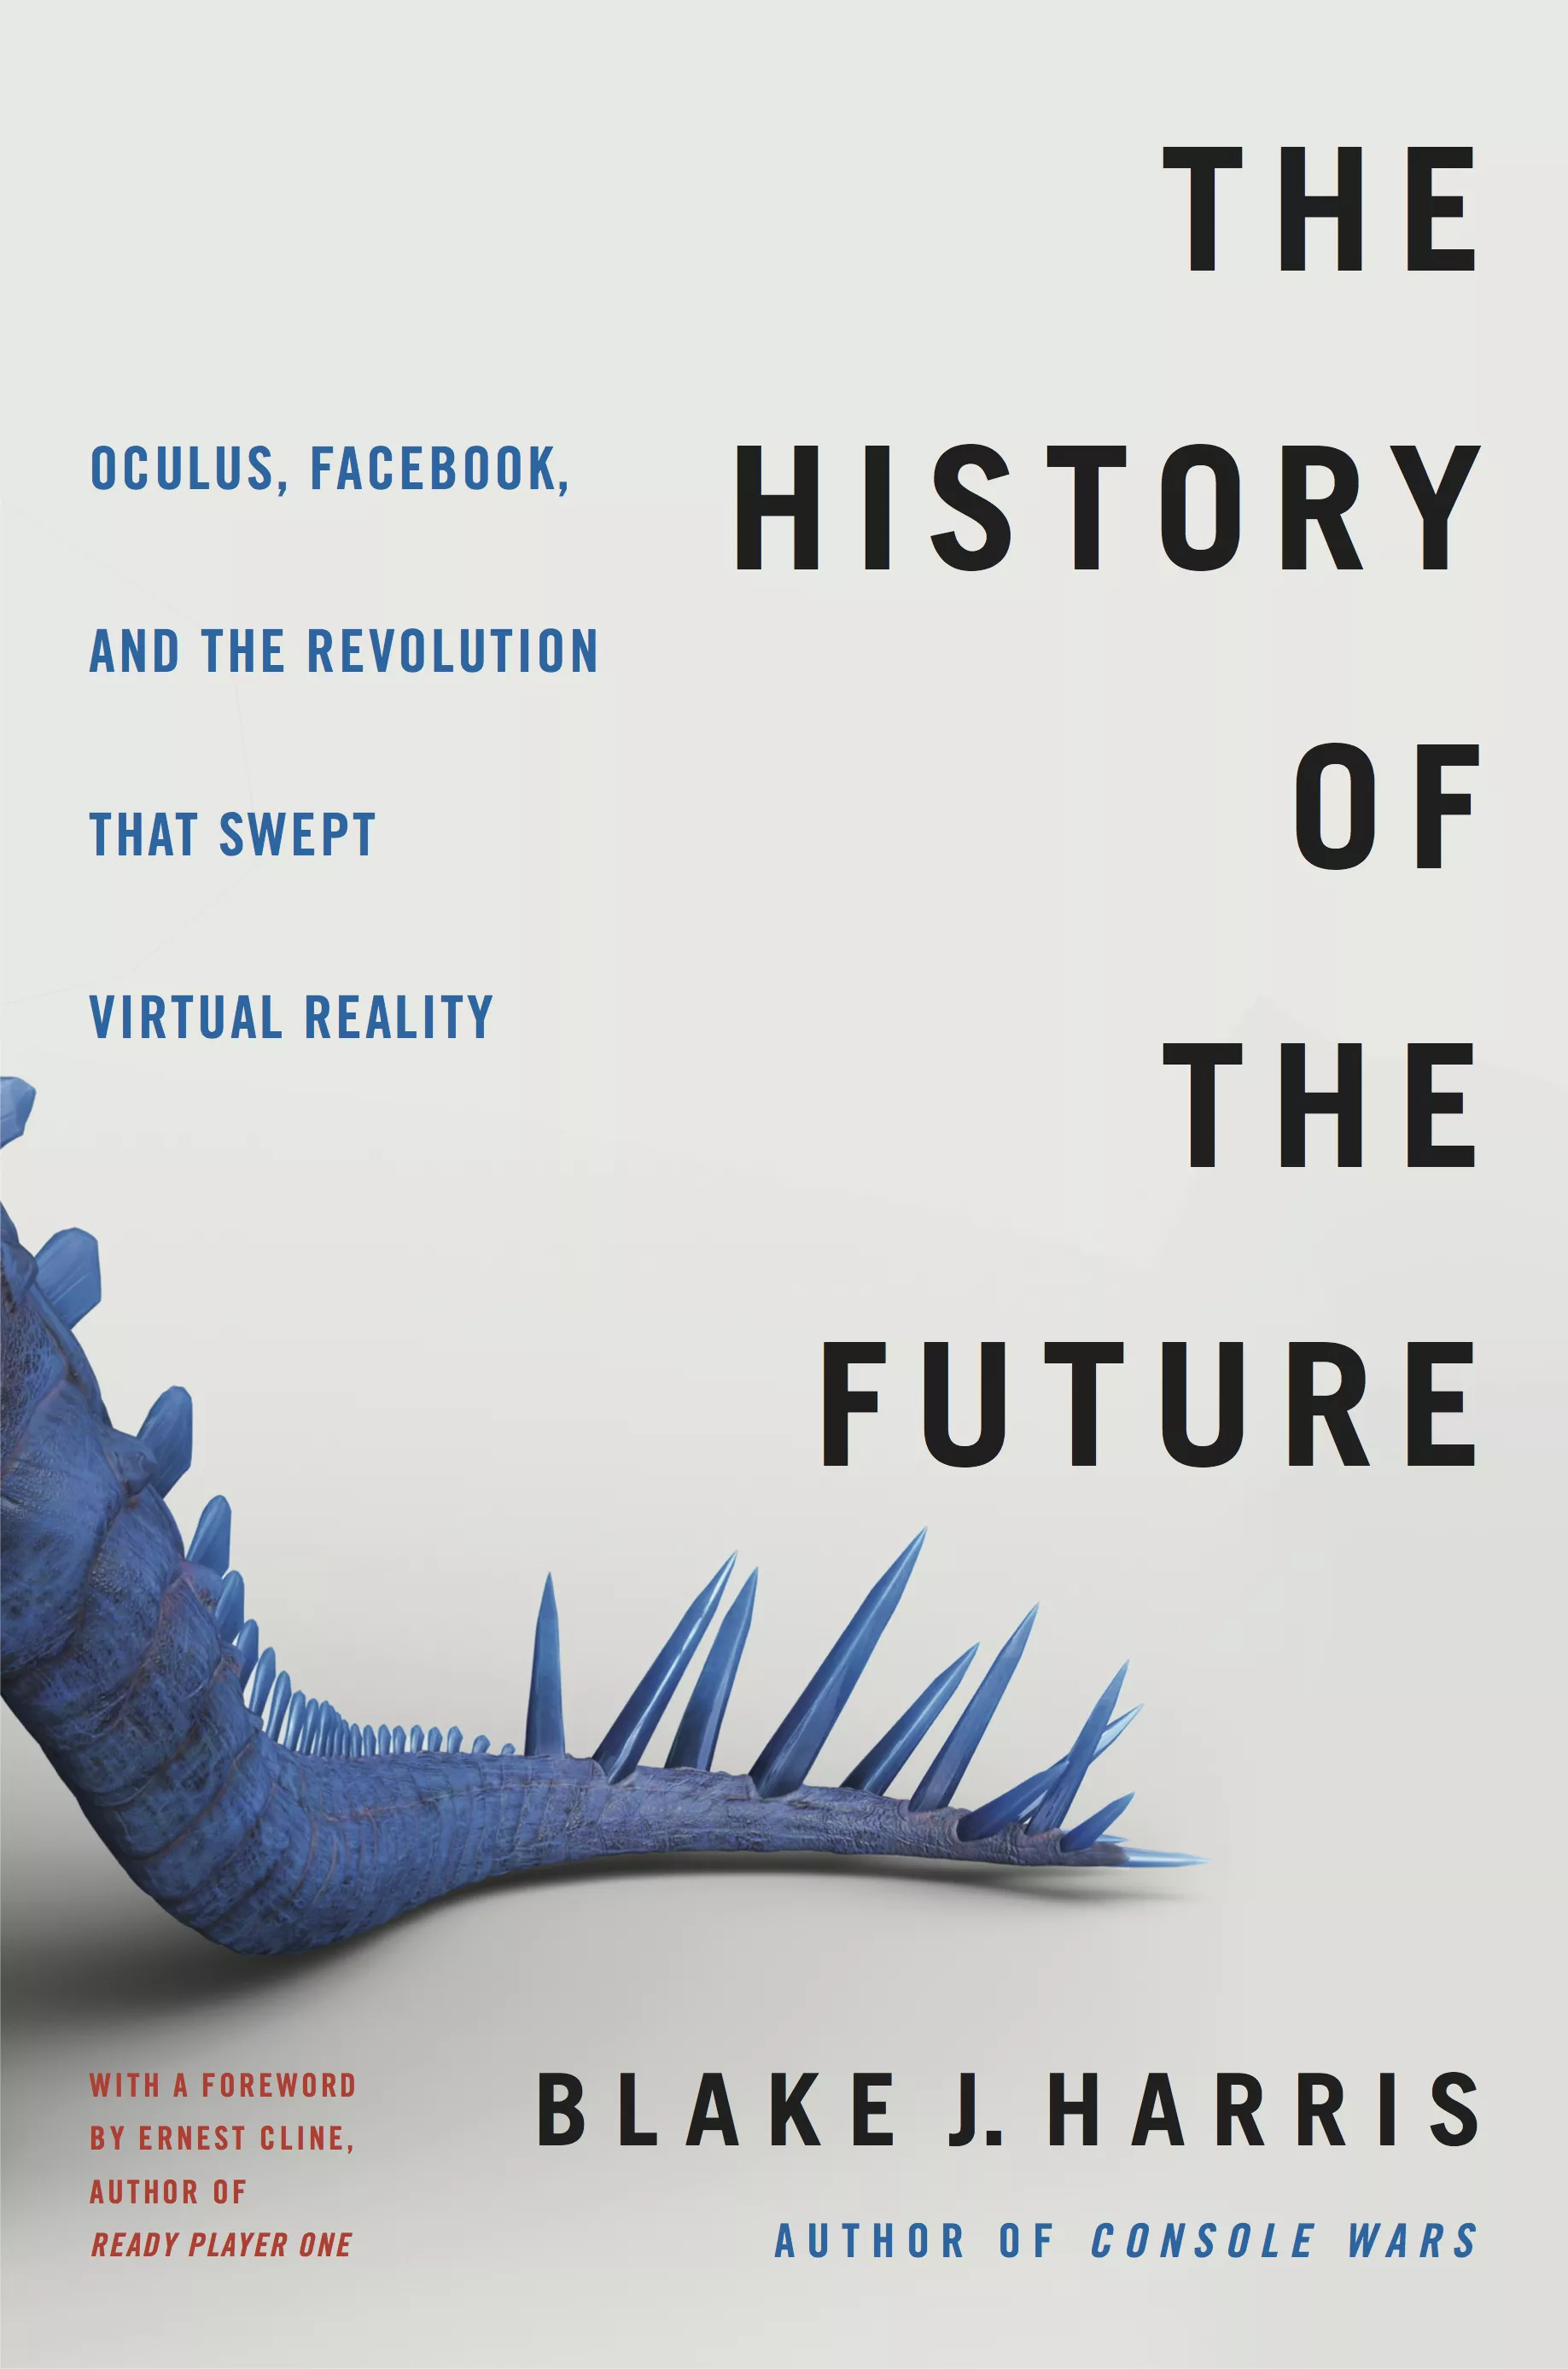 The History of the Future oleh Blake J. Harris - salah satu buku hebat tentang realitas virtual